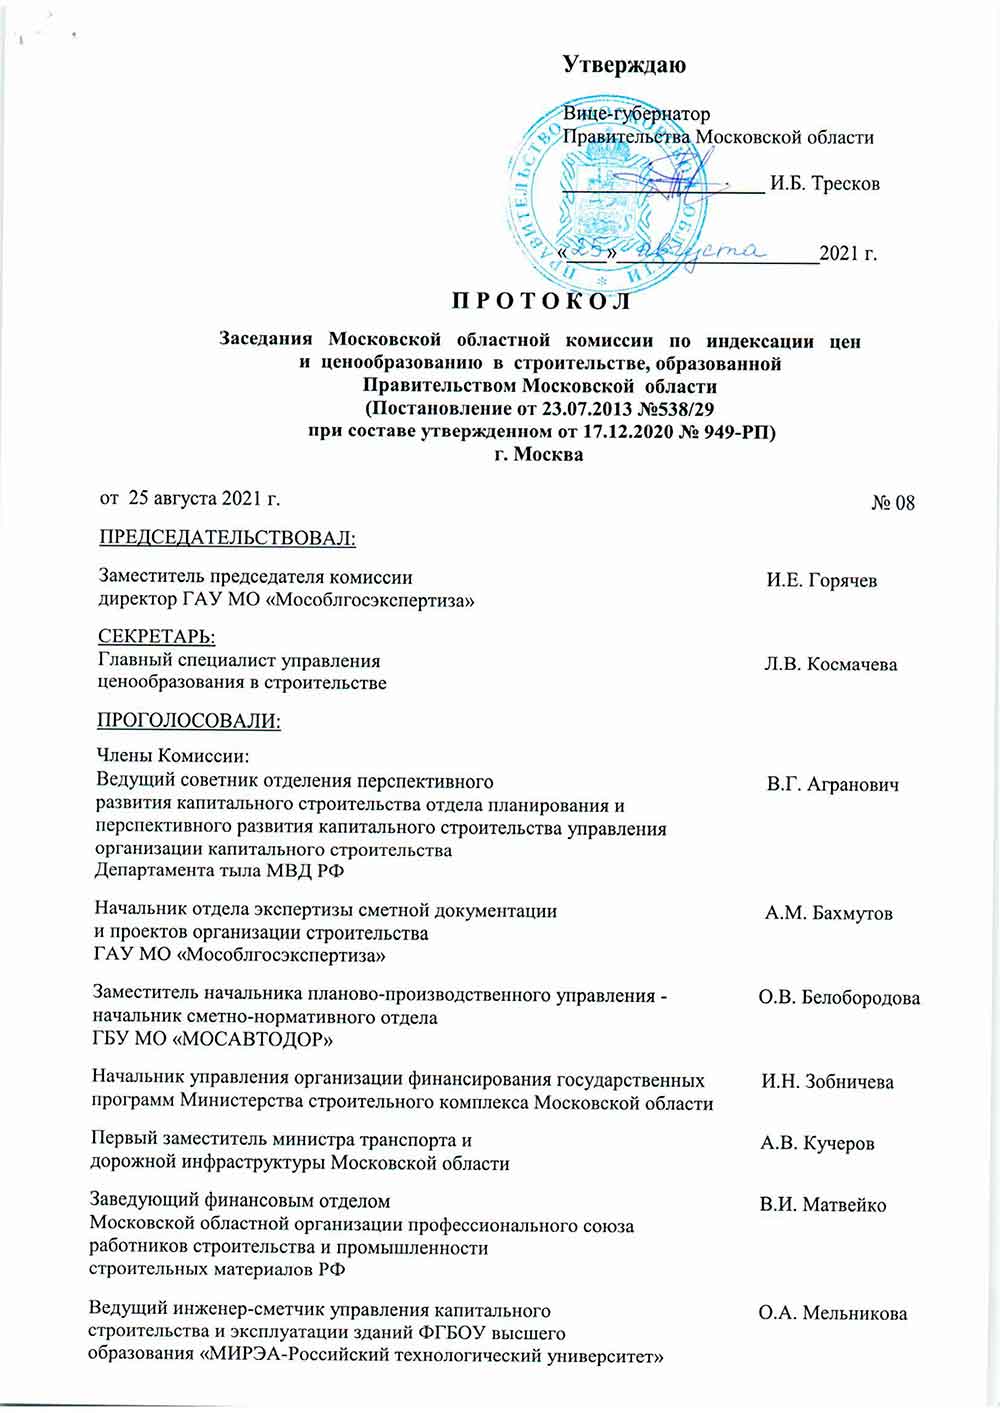 Протокол Мособлгосэкспертизы №08 от 25.08.2021 года